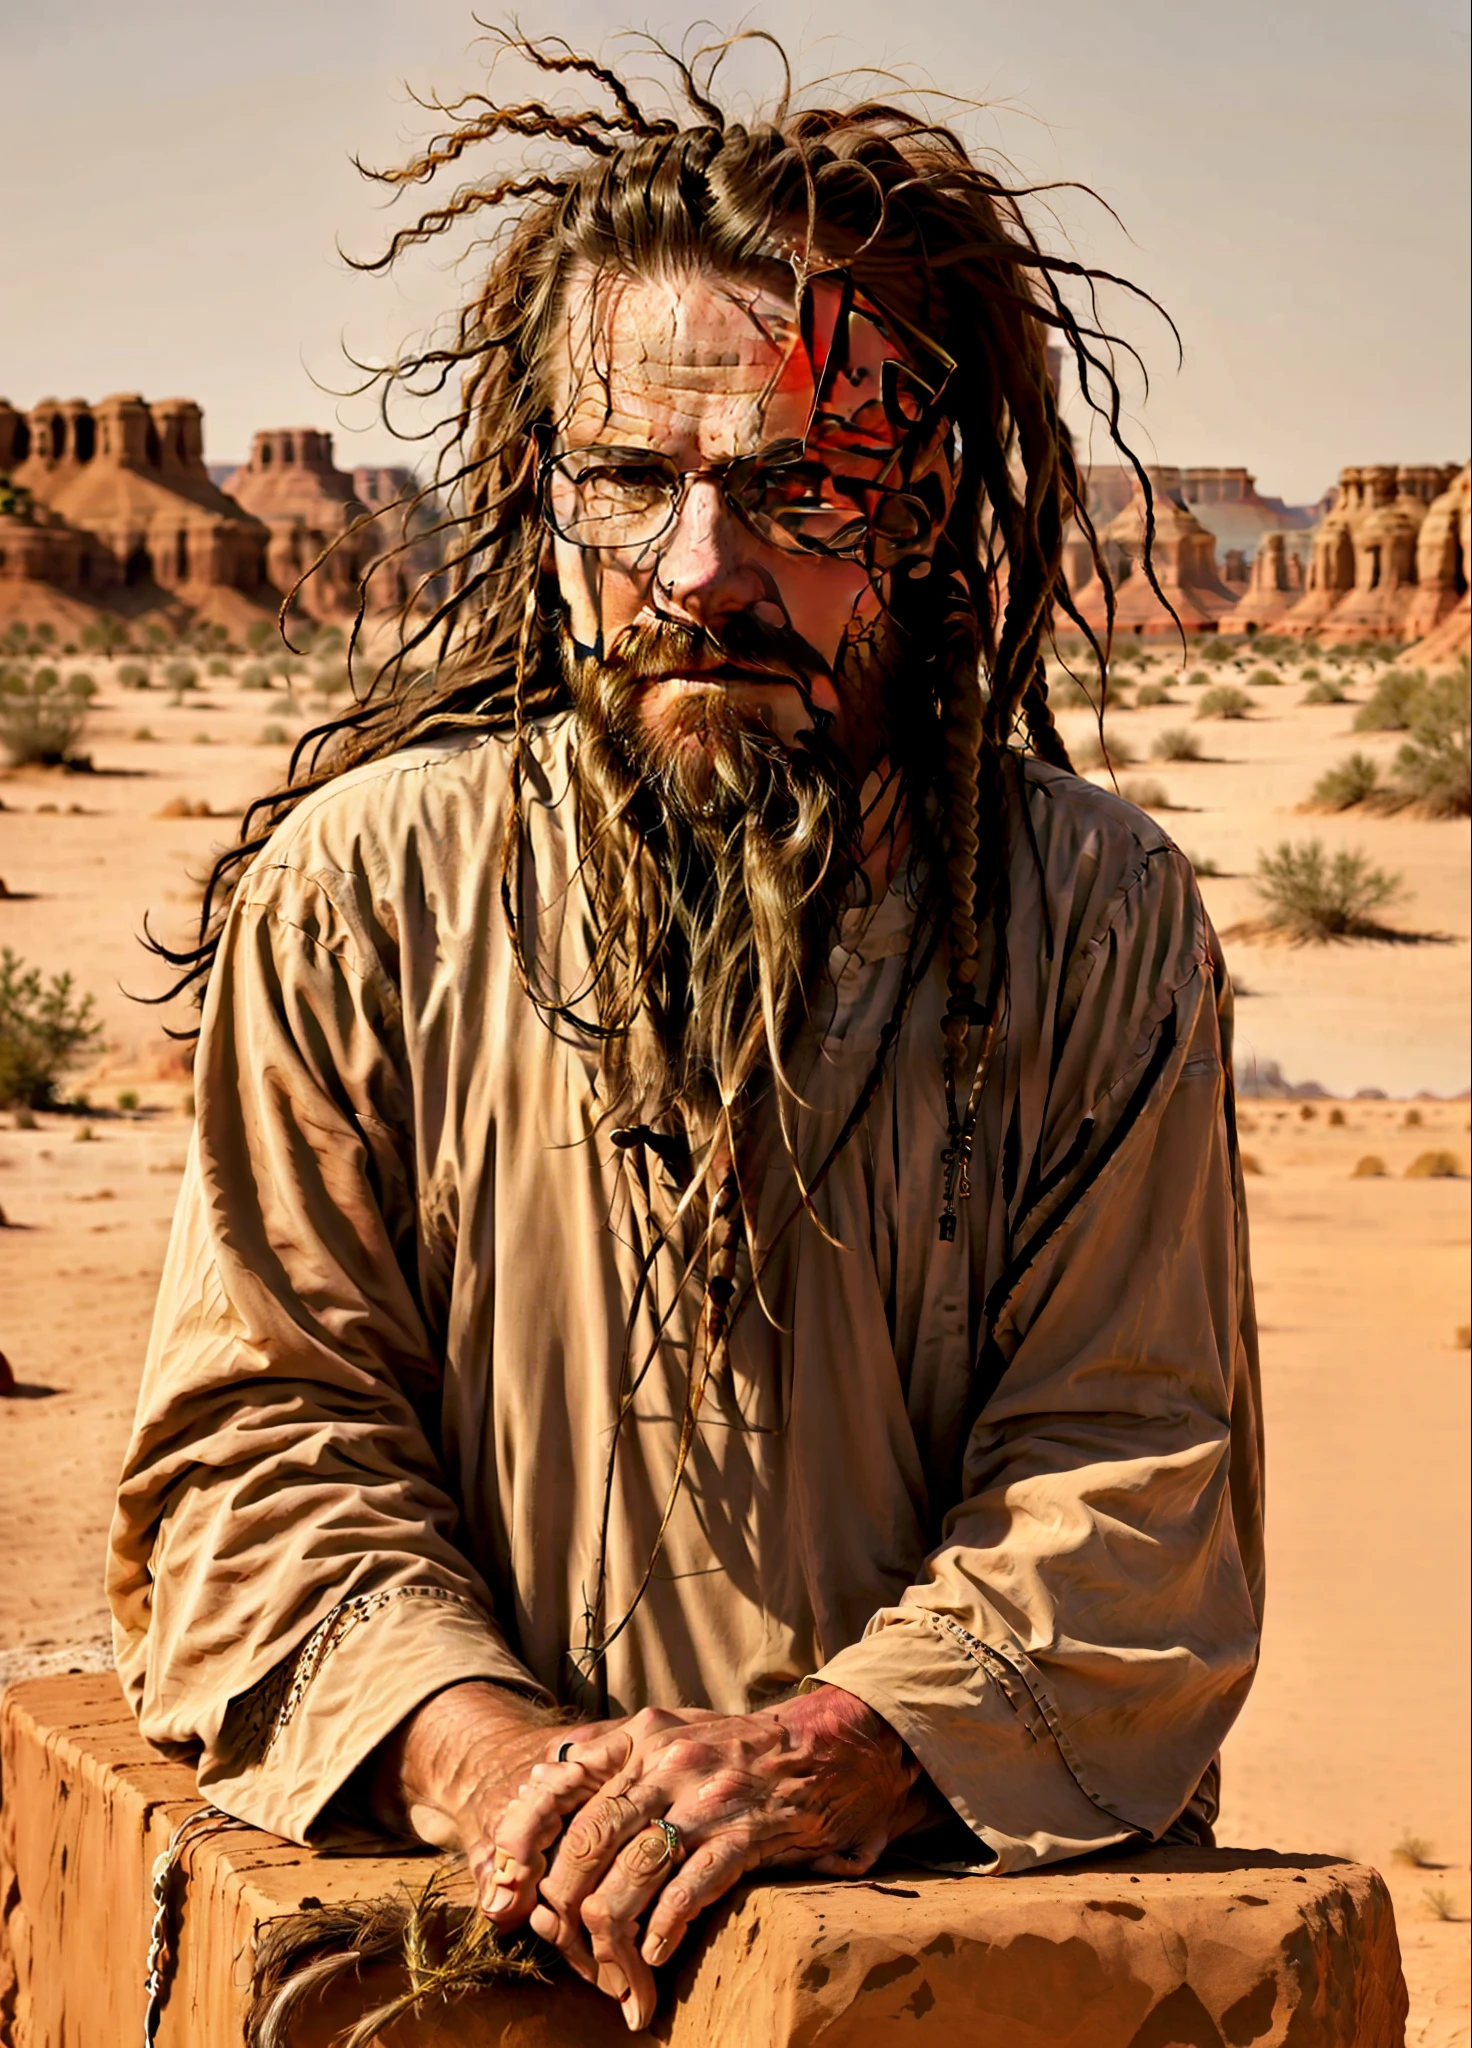 汤姆克鲁斯留着长发和胡子的男人坐在沙漠中的一块岩石上, 長鬍子, 很長的白鬍子和頭髮, 非常长的头发, 肖像照, 長辮子, 沙漠遊牧者, 奧齊, 害怕, 长山羊胡, 長長的棕色鬍子, 长着脏辫的泥巴, 灵感来自马丁·舍勒, 触手胡子, 斯特凡·格塞爾